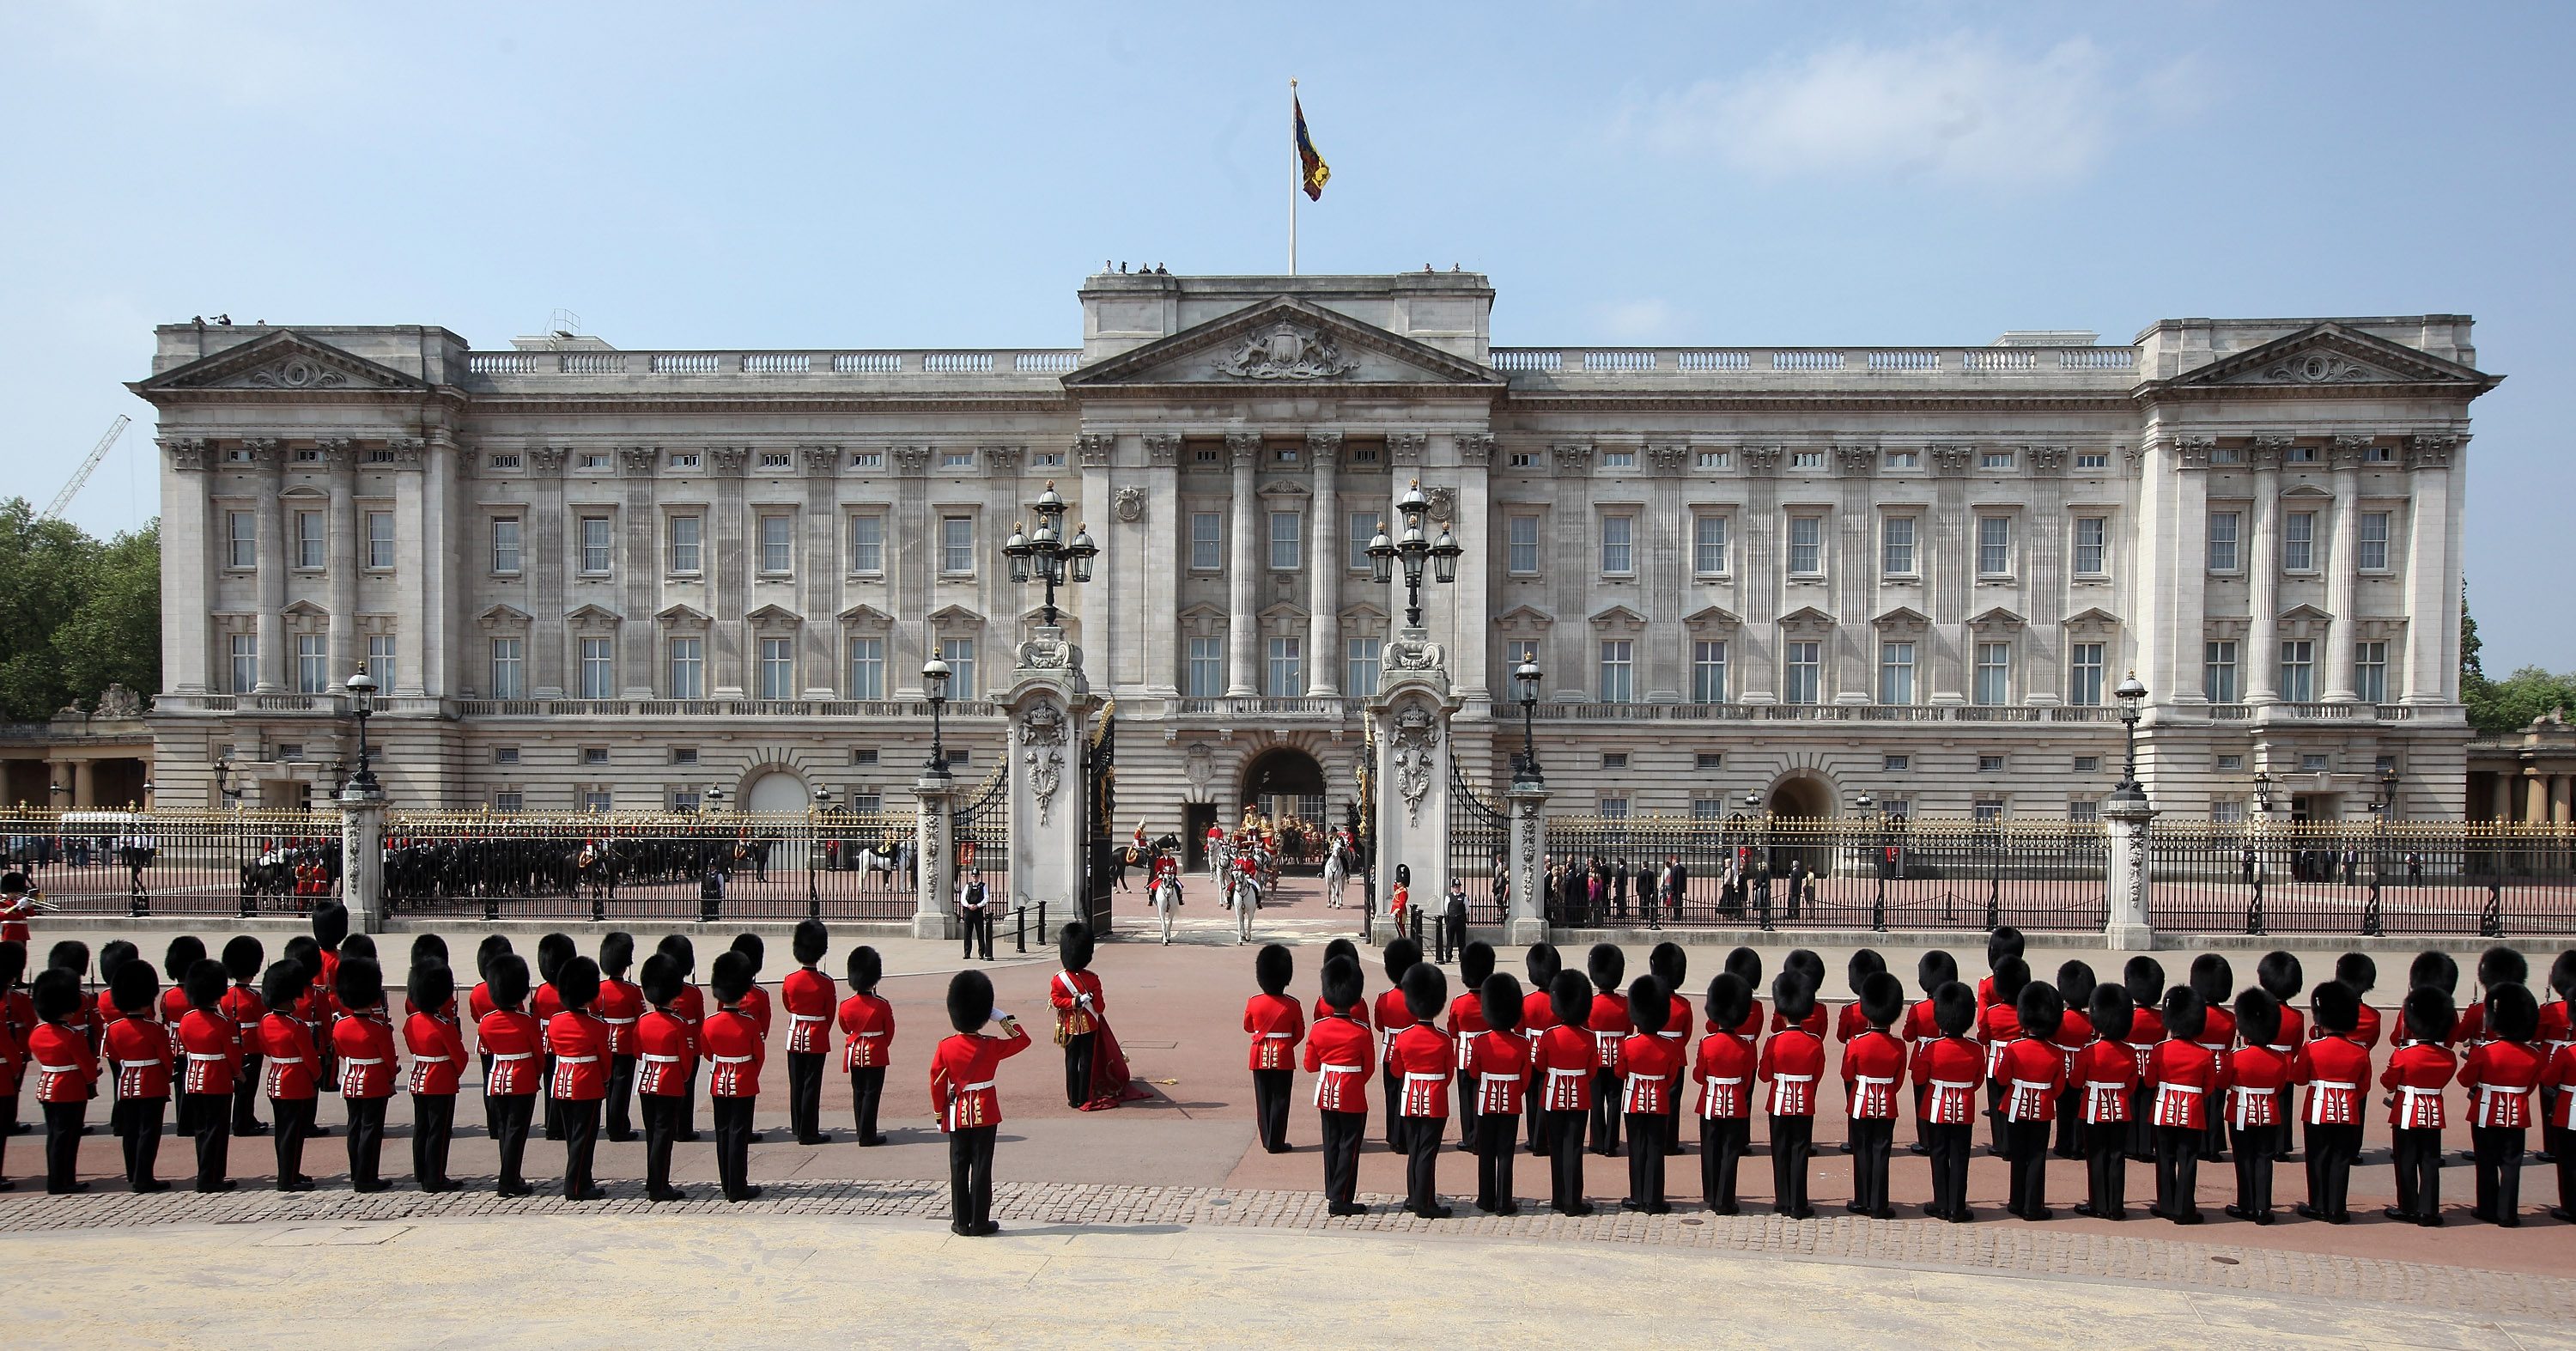 Buckingham palace photo